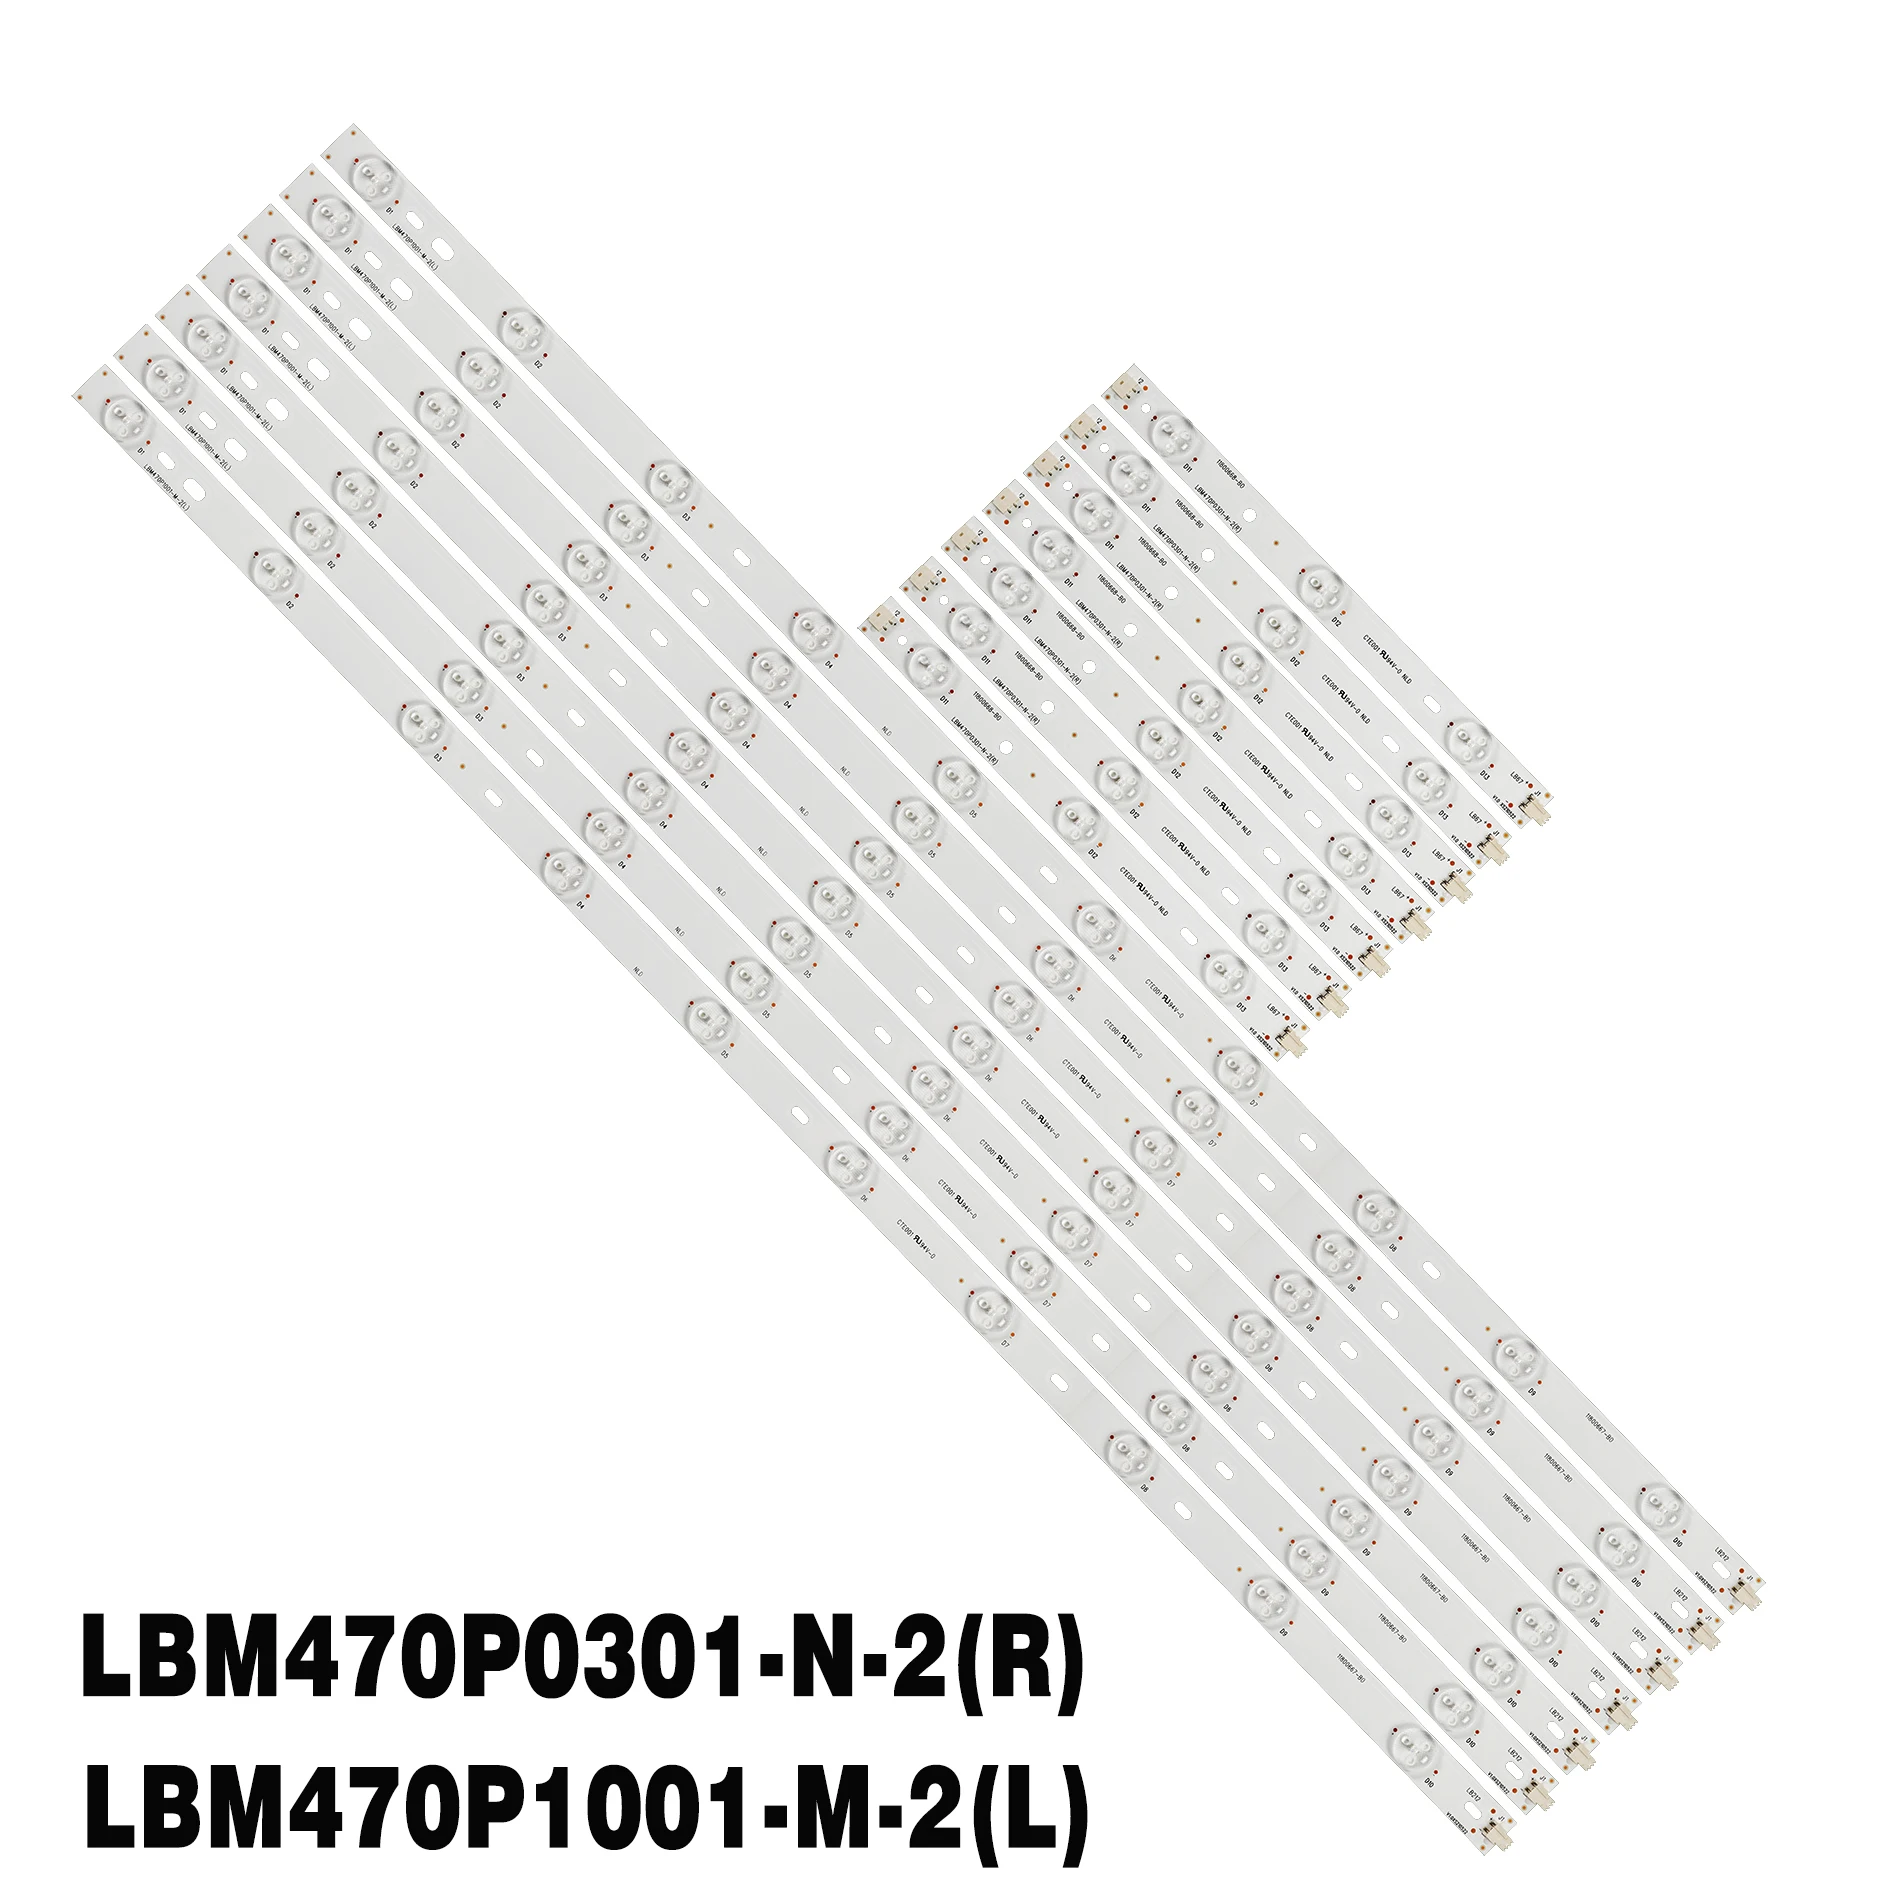 

Kit 14pcs LED backlight strip For 47PFT6569/60 47PFS7109/12 47PFK7109/12 47PFK6589/12 LBM470P1001-M-2(L) LBM470P0301-N-2(R)